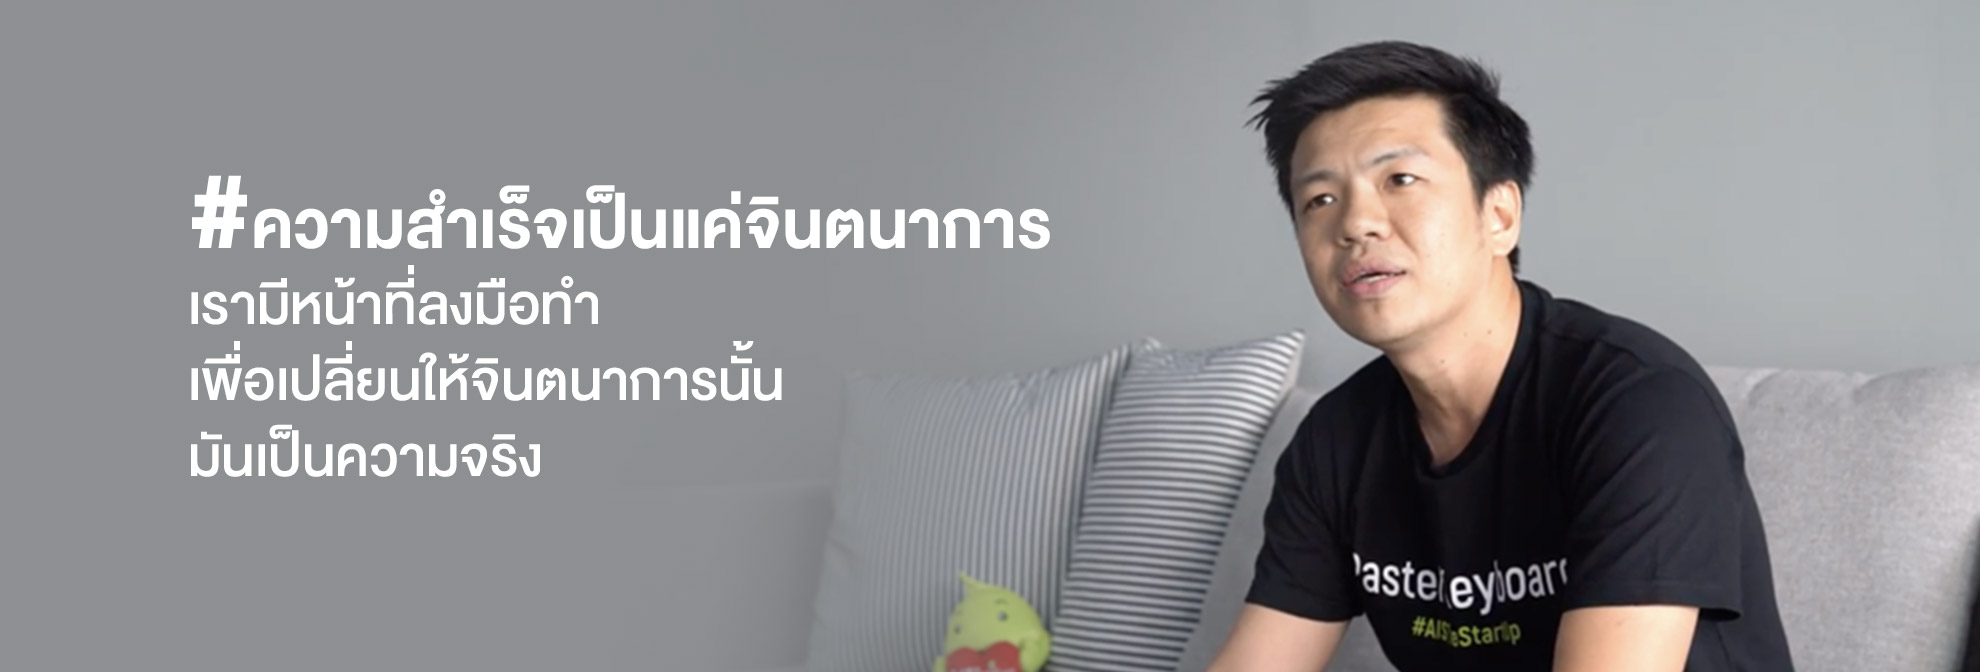 คุณเอก Pastel keyboard - Startup Thailand